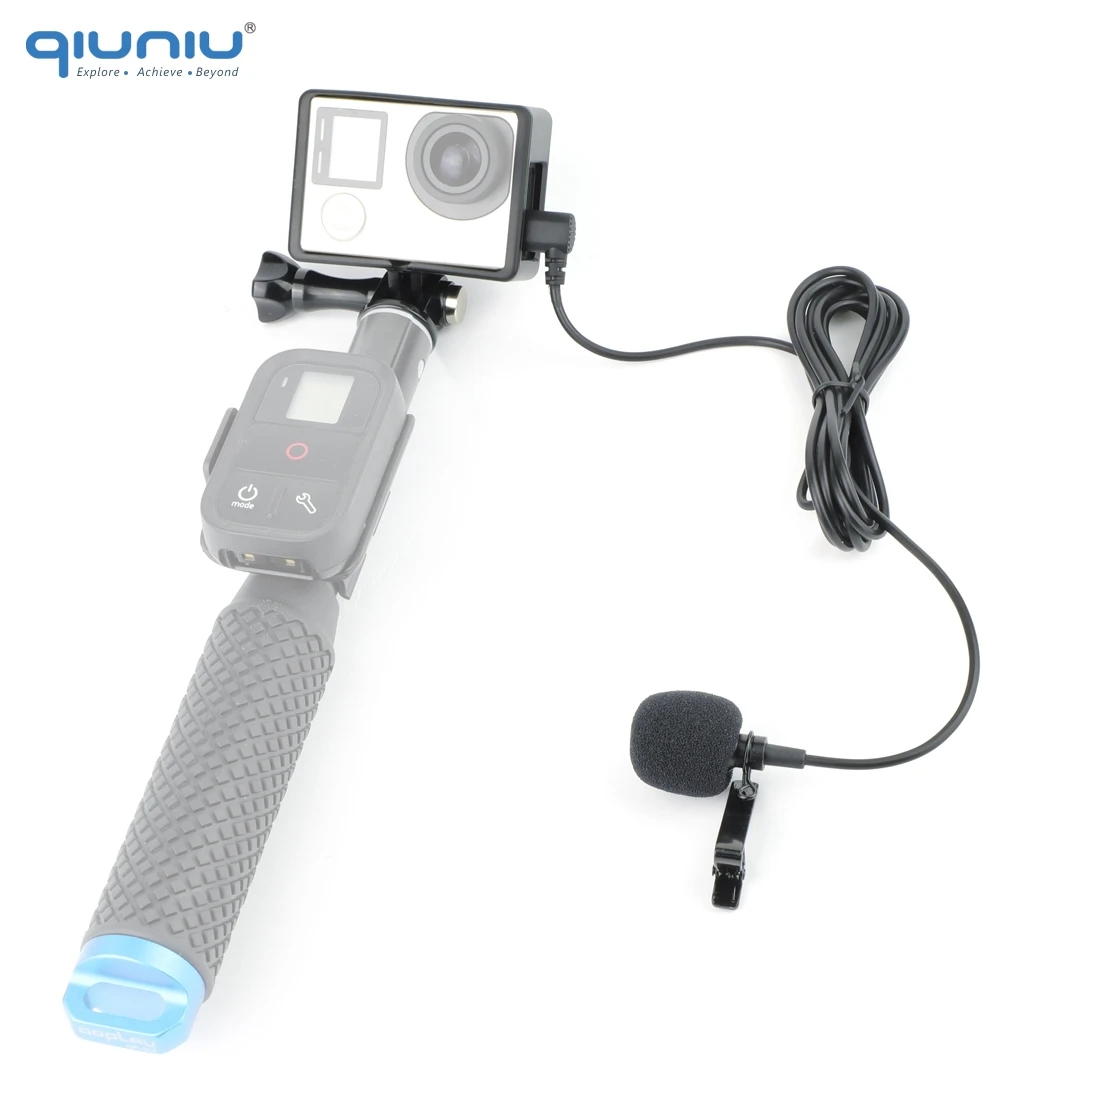 Внешний микрофон QIUNIU 2 м со стандартной рамкой защитный чехол накладка для GoPro Hero 3